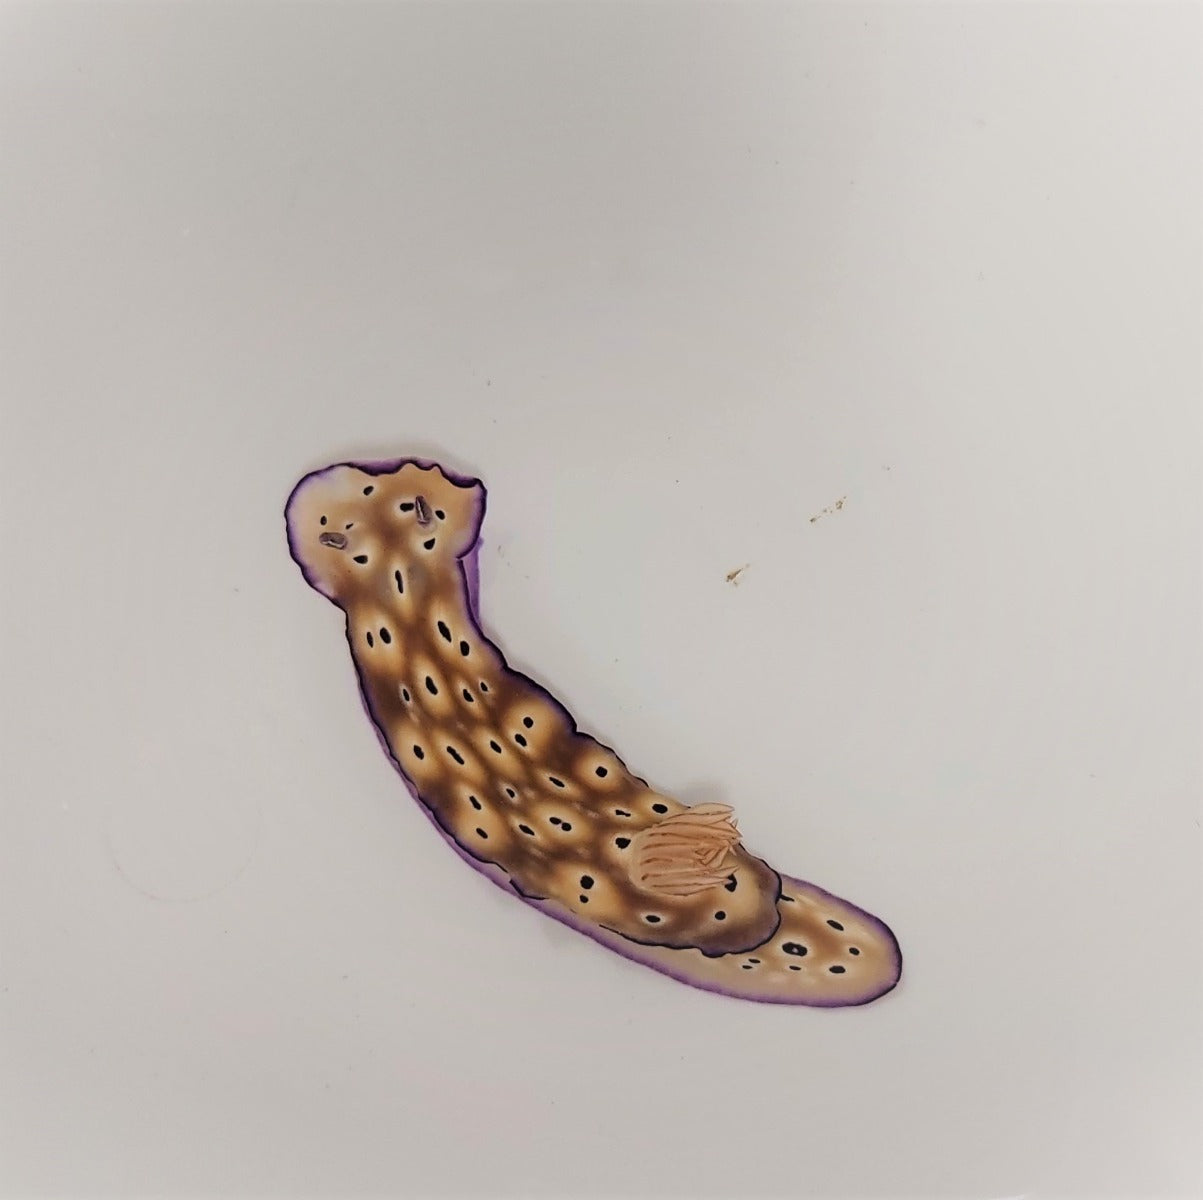 Hypselodoris tryoni - Dorid nudibranch